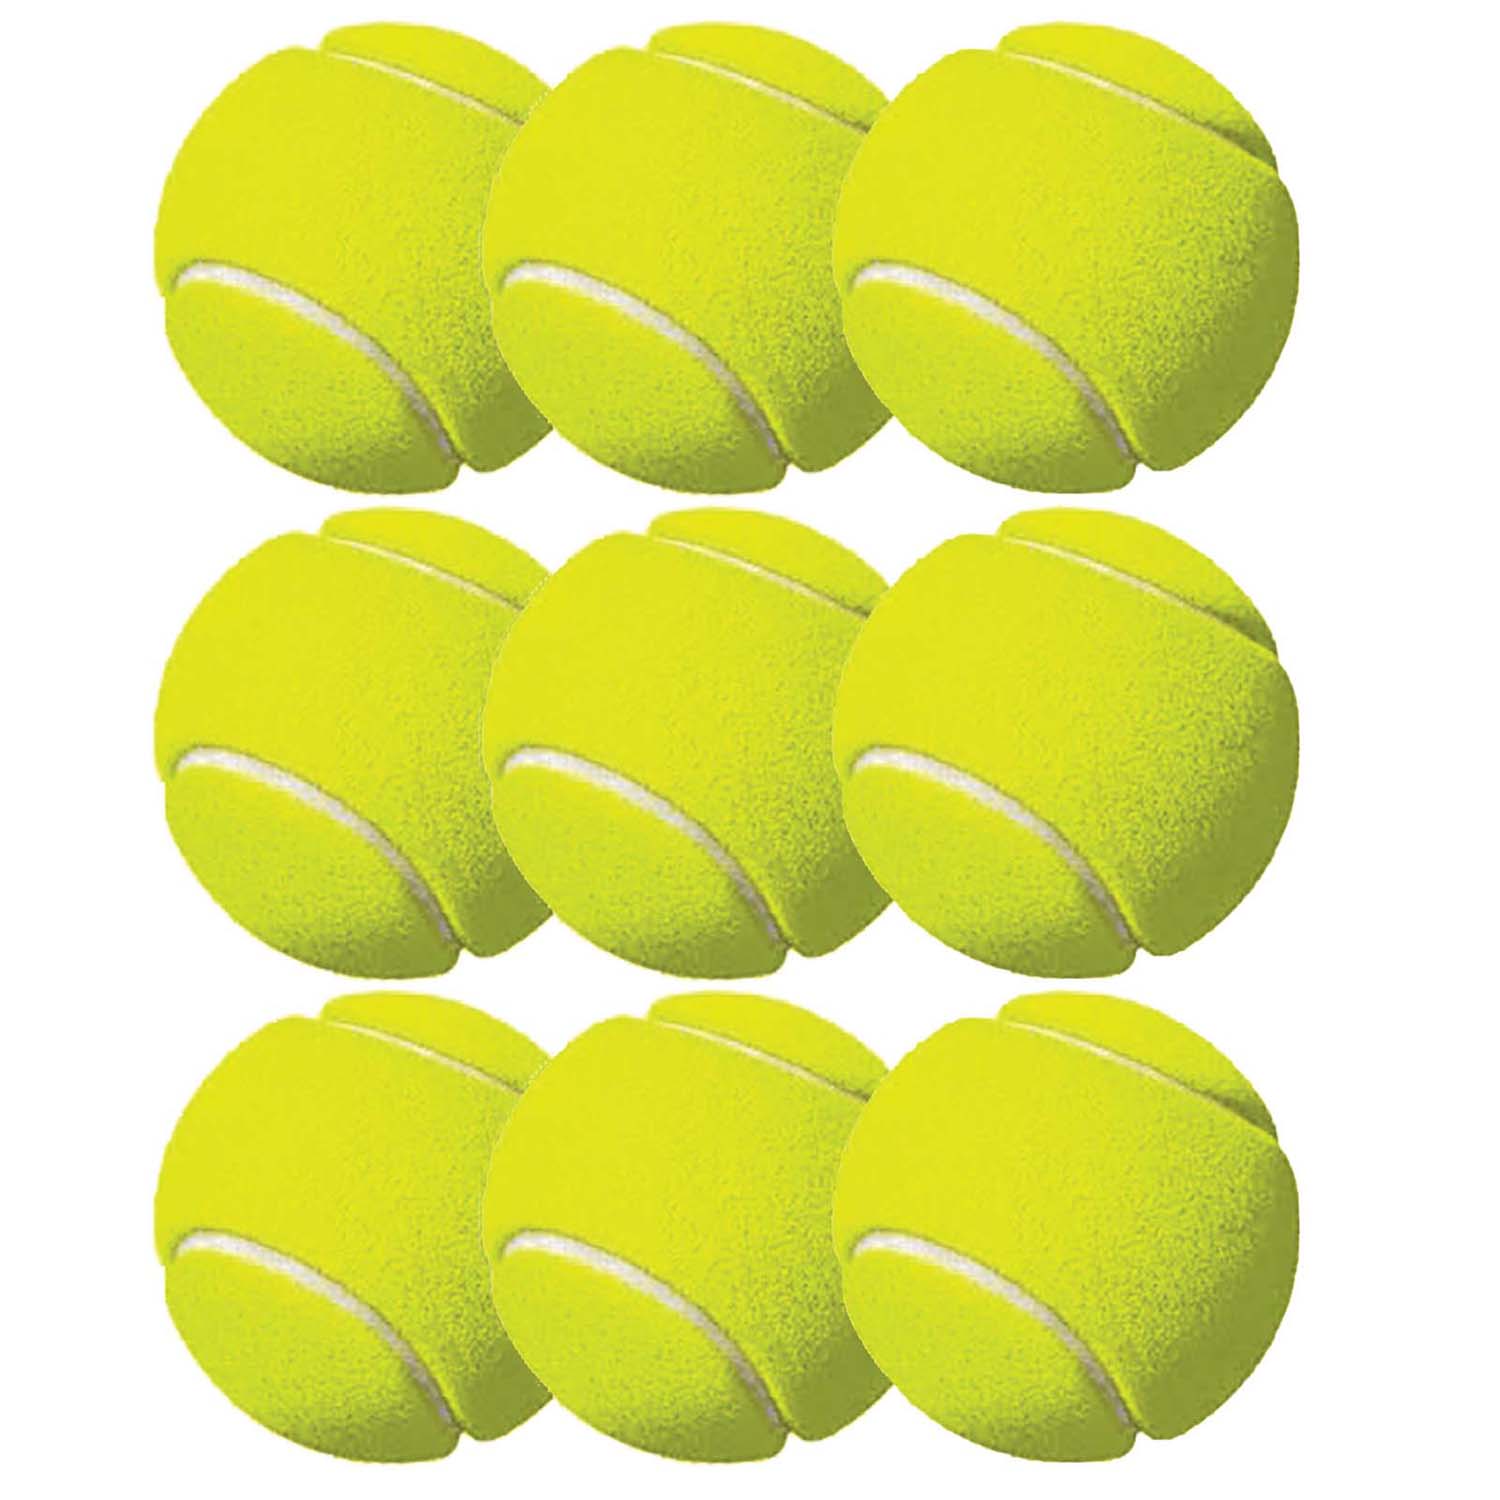 Tennis Balls, 3 Per Pack, 3 Packs